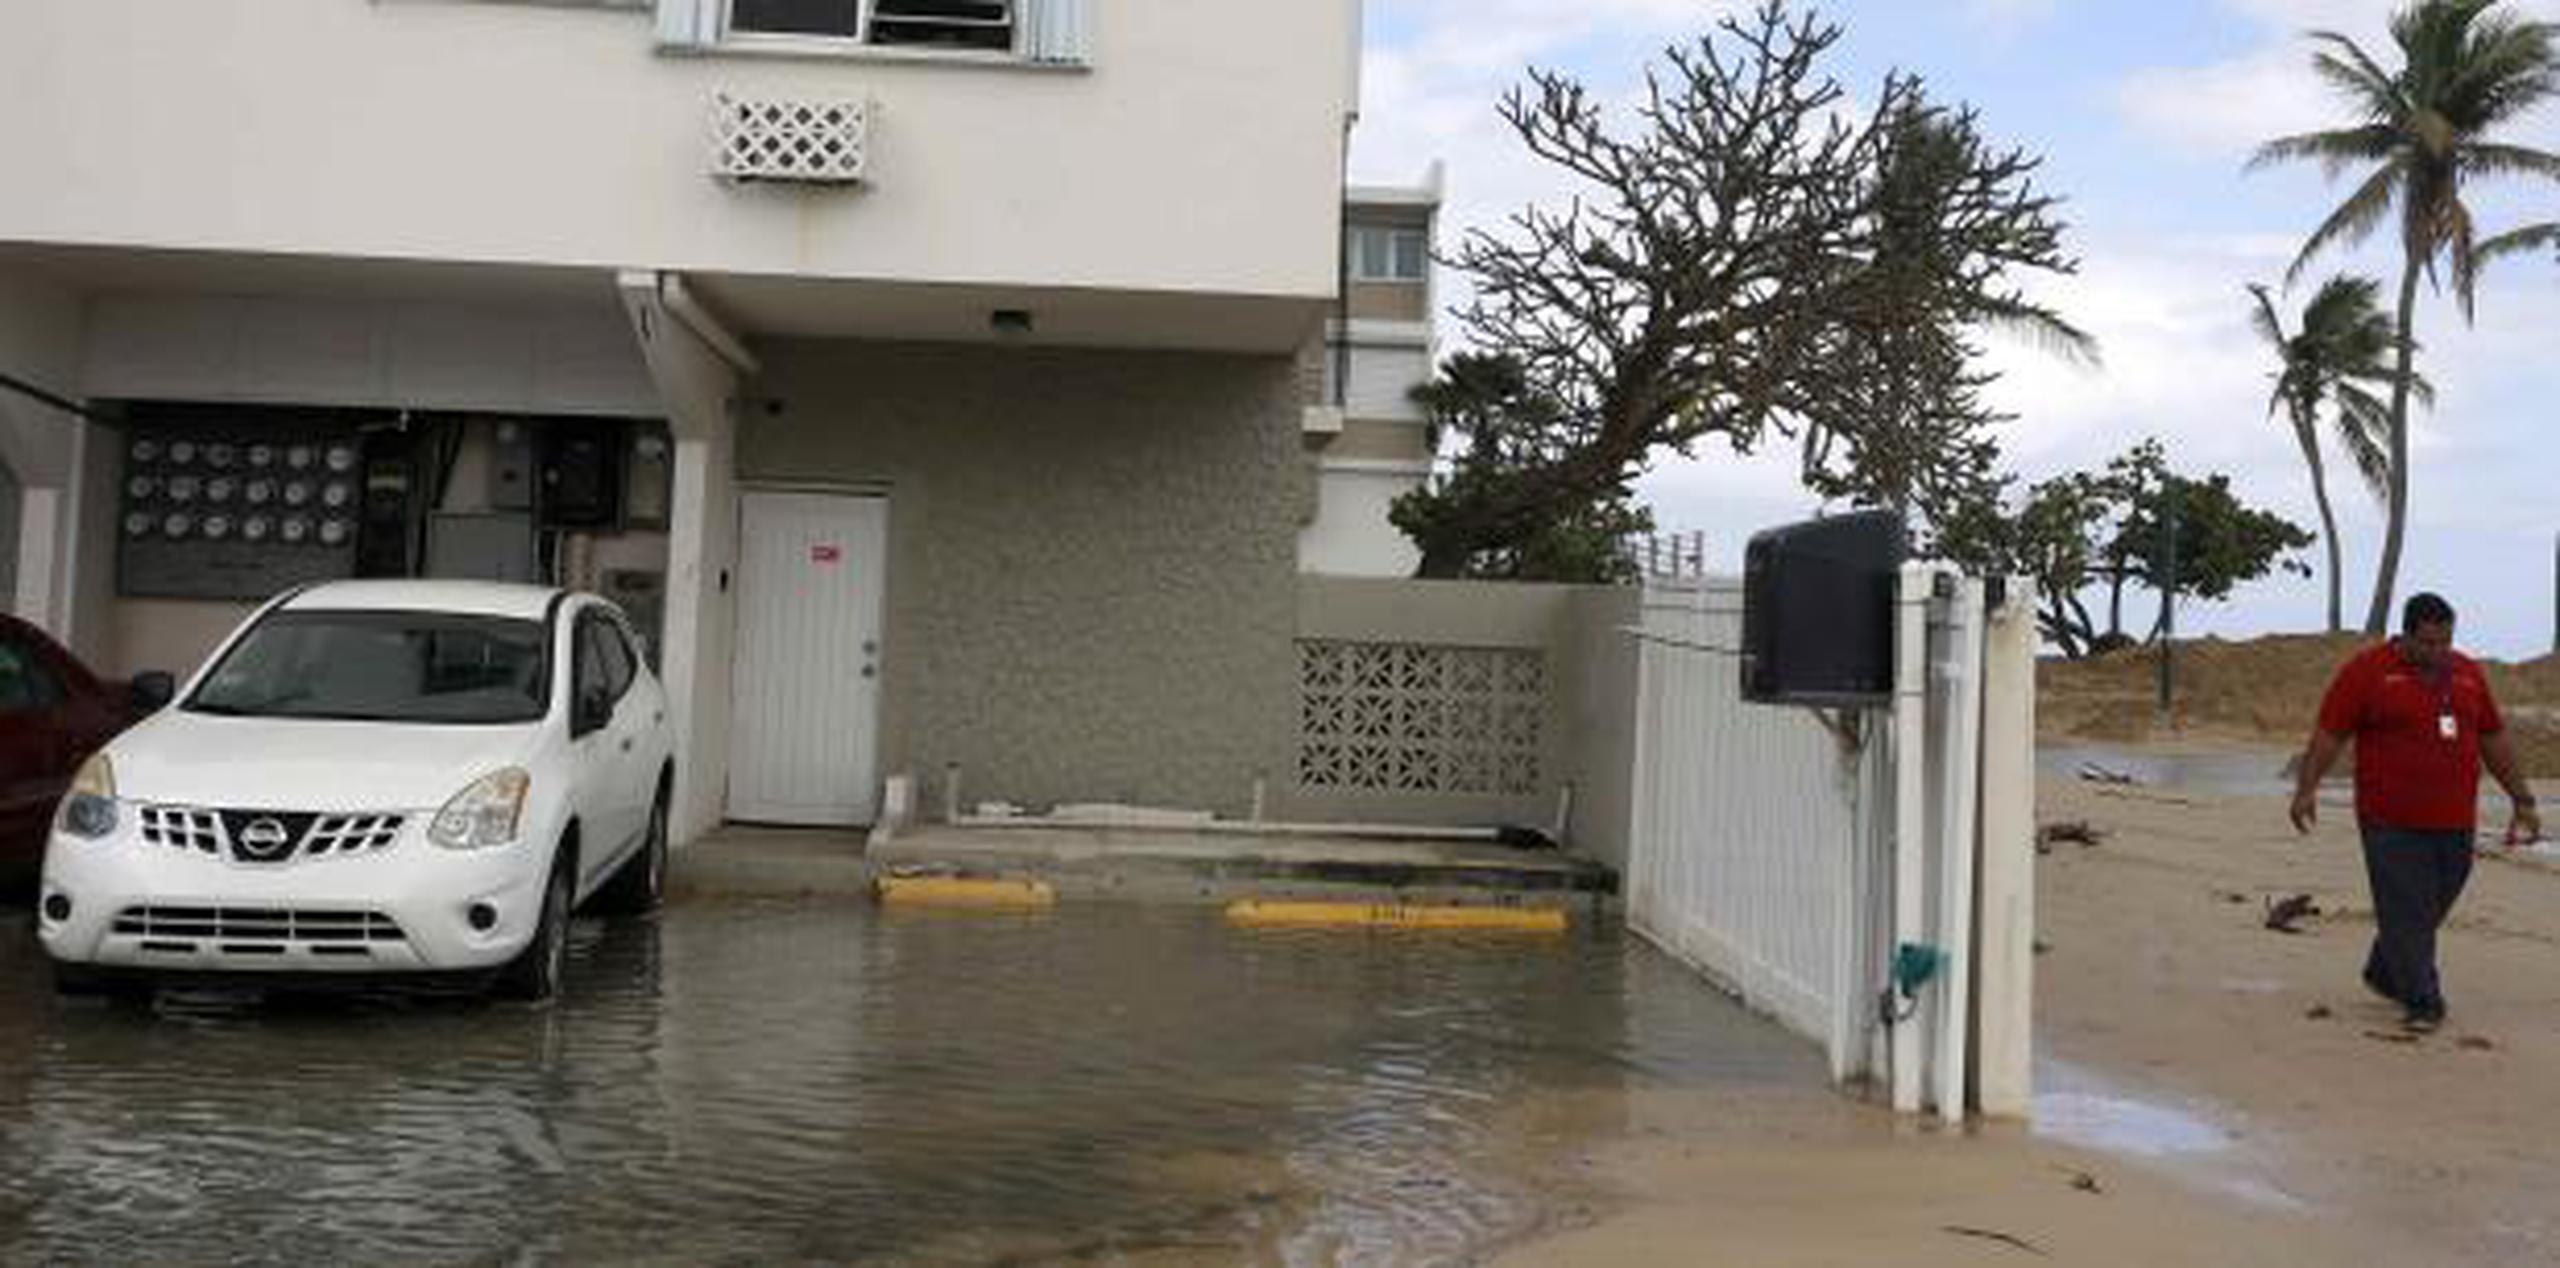 La medida propone realizar un estudio sobre los planes de mitigación, prevención y mejoras a la infraestructura que se encuentra realizando el municipio para atender el problema de inundaciones. (EFE)